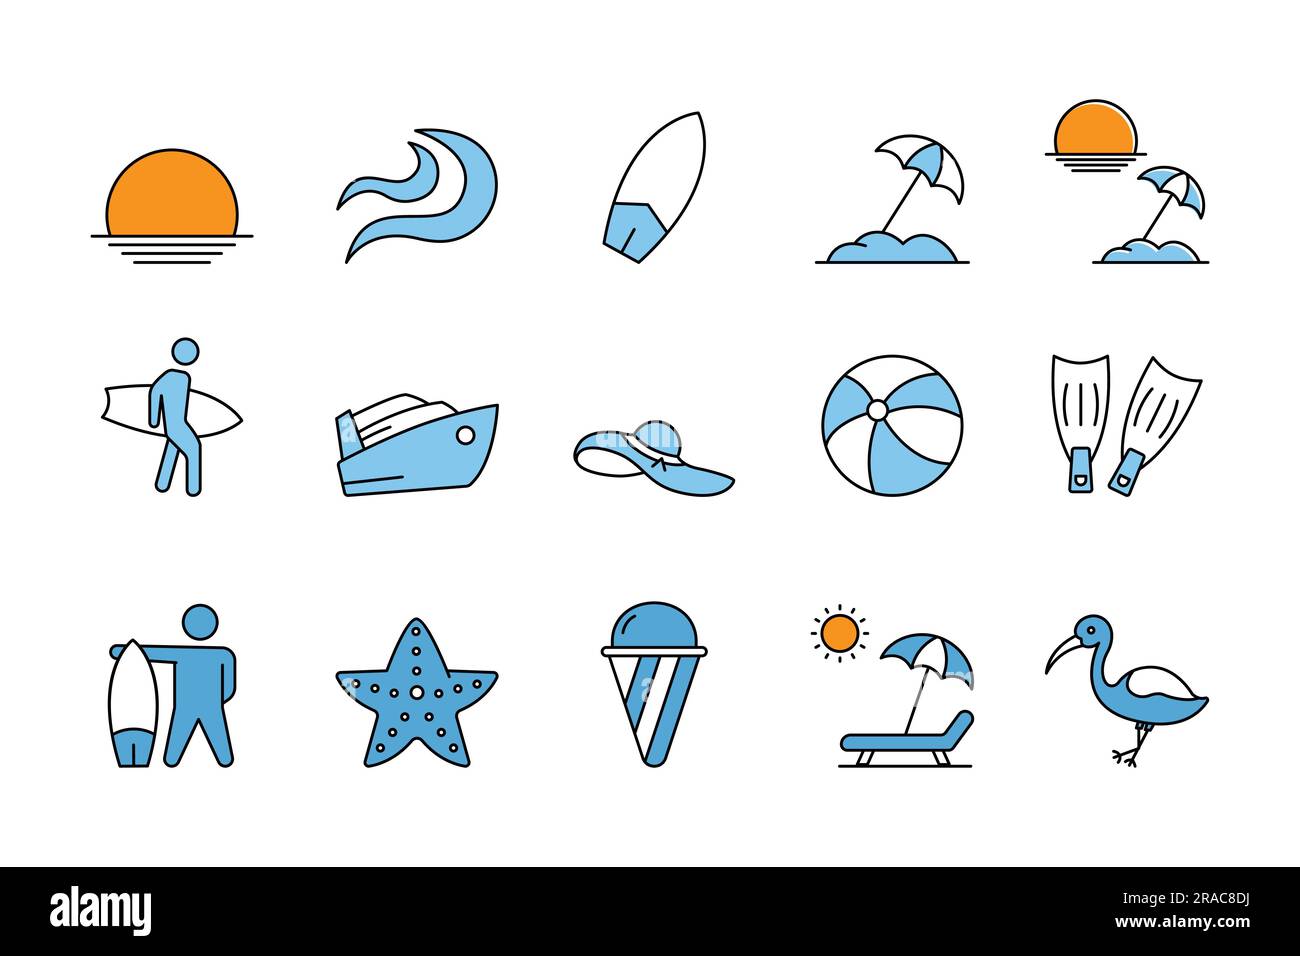 Sommerset-Symbol. Enthält Symbole für Sonnenuntergänge, Sonnenaufgänge, Wellen, Surfbretter, Sonnenschirme, Surfer, Sonnenliegen und mehr. Flaches Design im Icon-Stil. Sim Stock Vektor